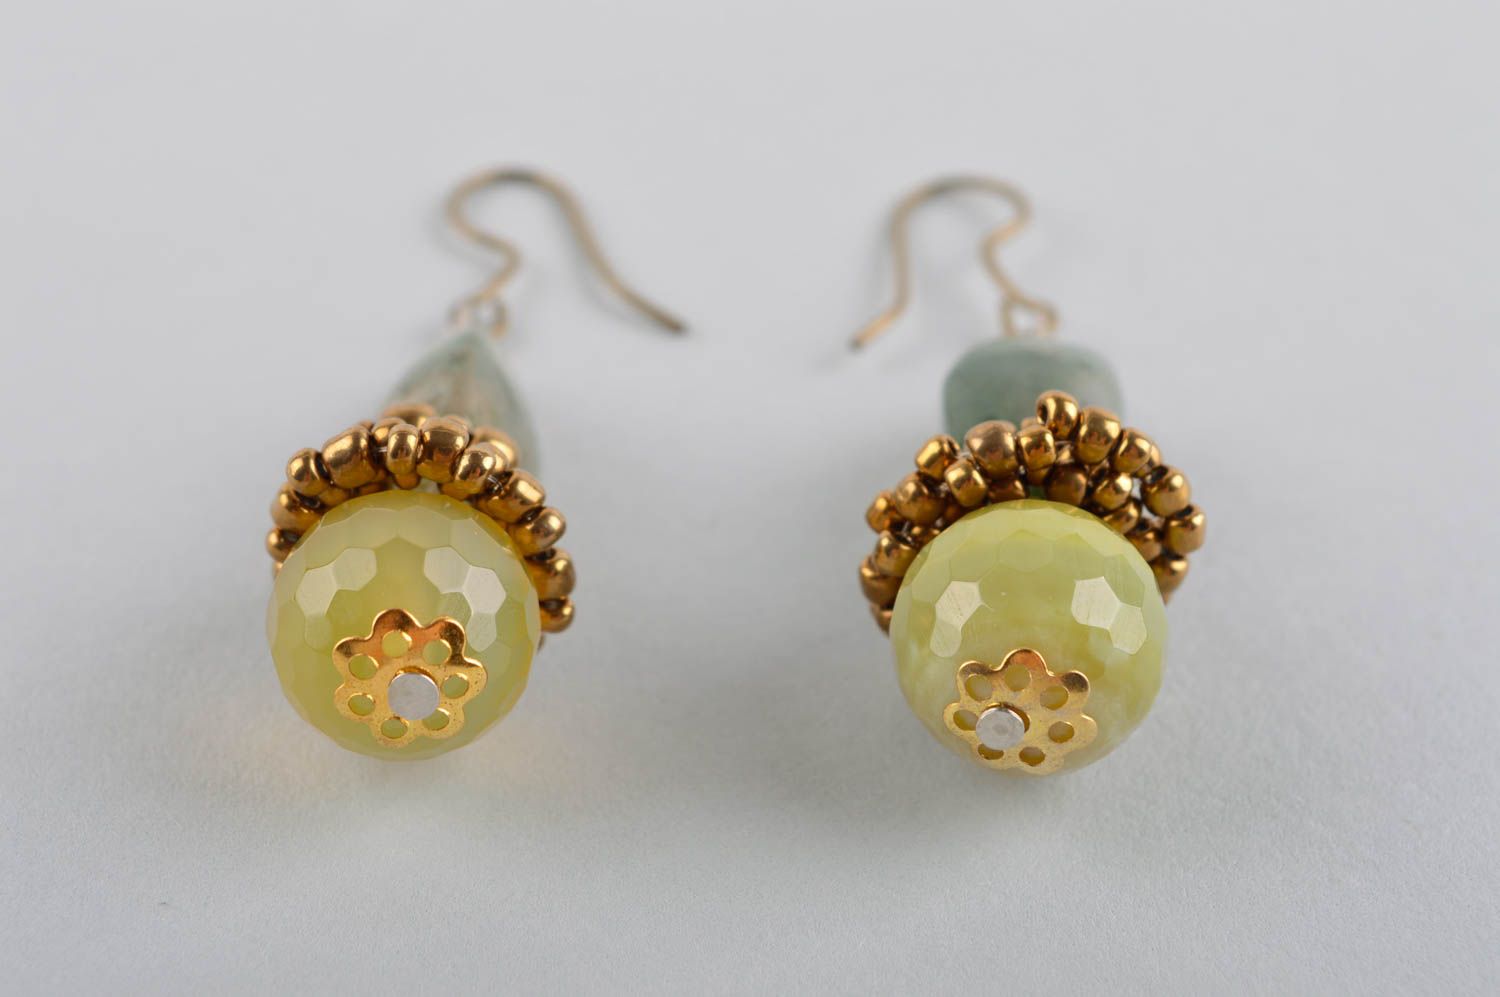 Handmade earrings stylish earrings designer jewelry women accessories gift ideas photo 4